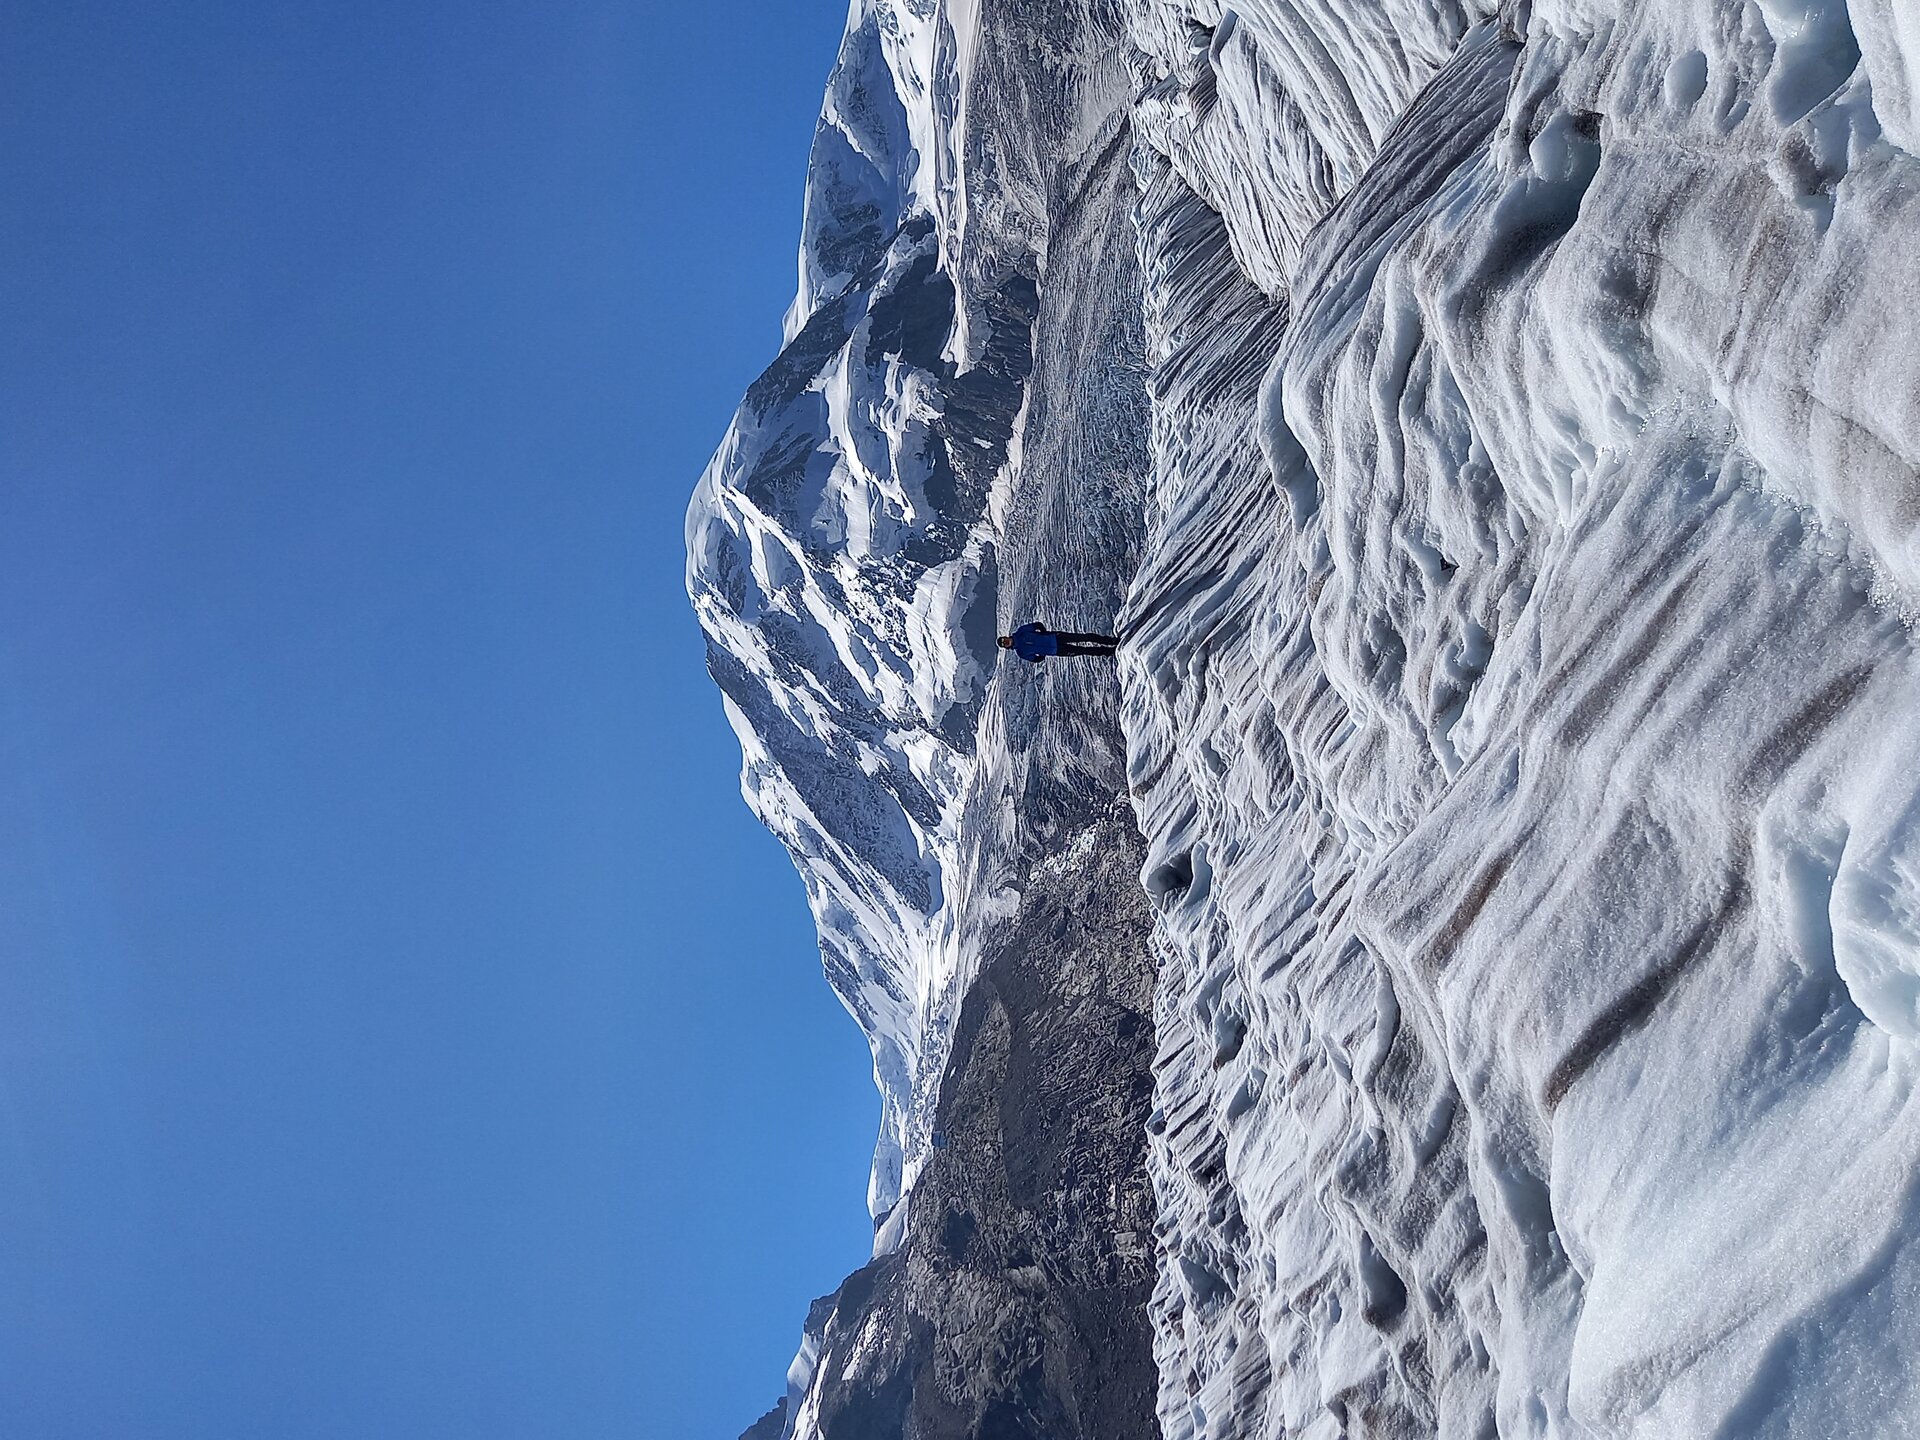 ESA Expedition to the Gorner Glacier